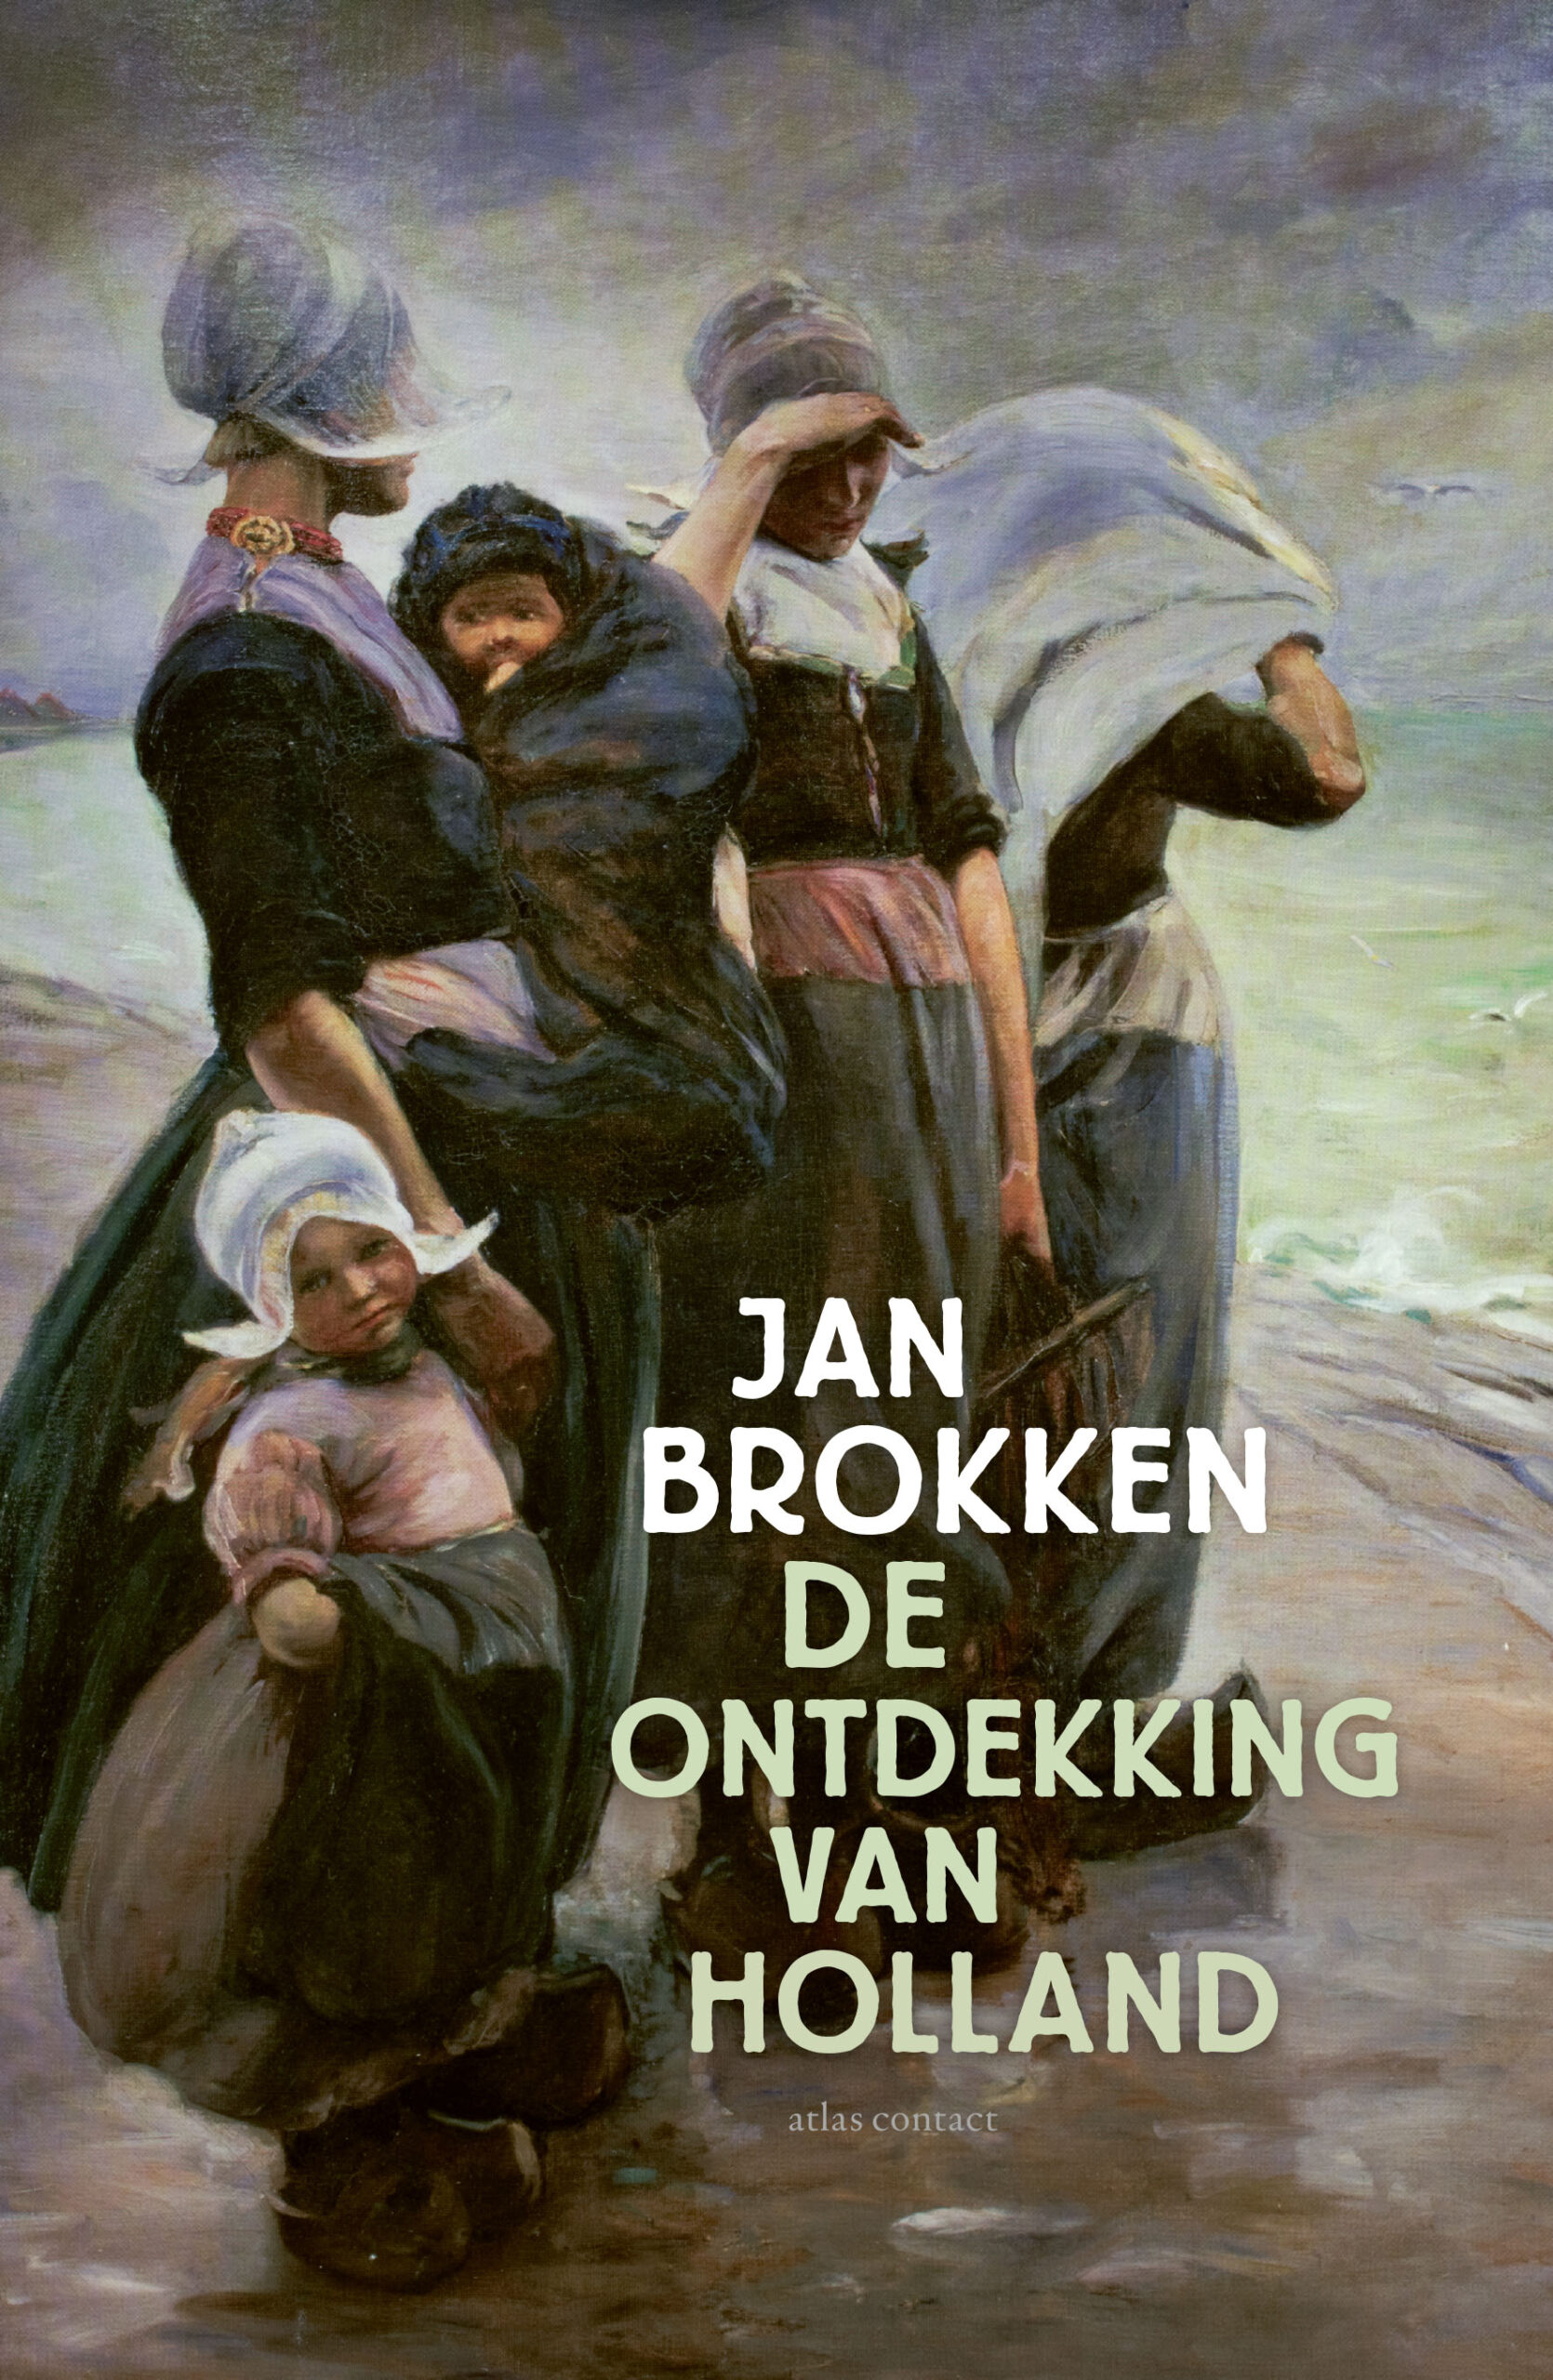 ‘Het is weer een echte Brokken, geschreven in die fluwelen, beeldende stijl’ – Katja de Bruin in de VPRO gids over ‘De ontdekking van Holland’